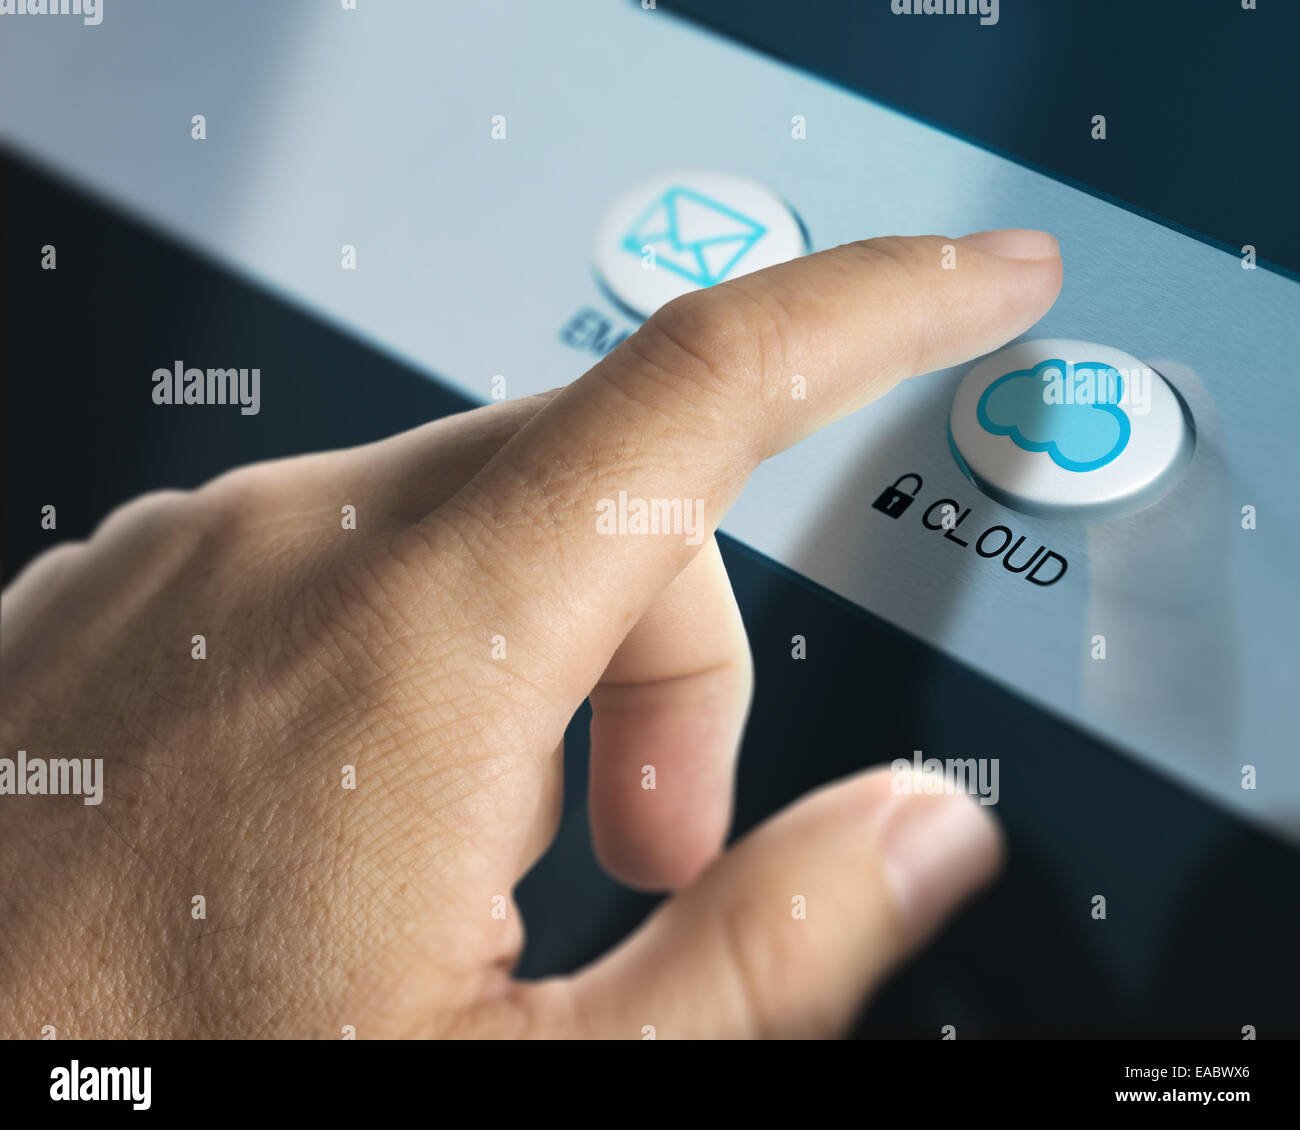 Un doigt appuyé sur un bouton, l'image de cloud computing concept de cloud computing. Banque D'Images